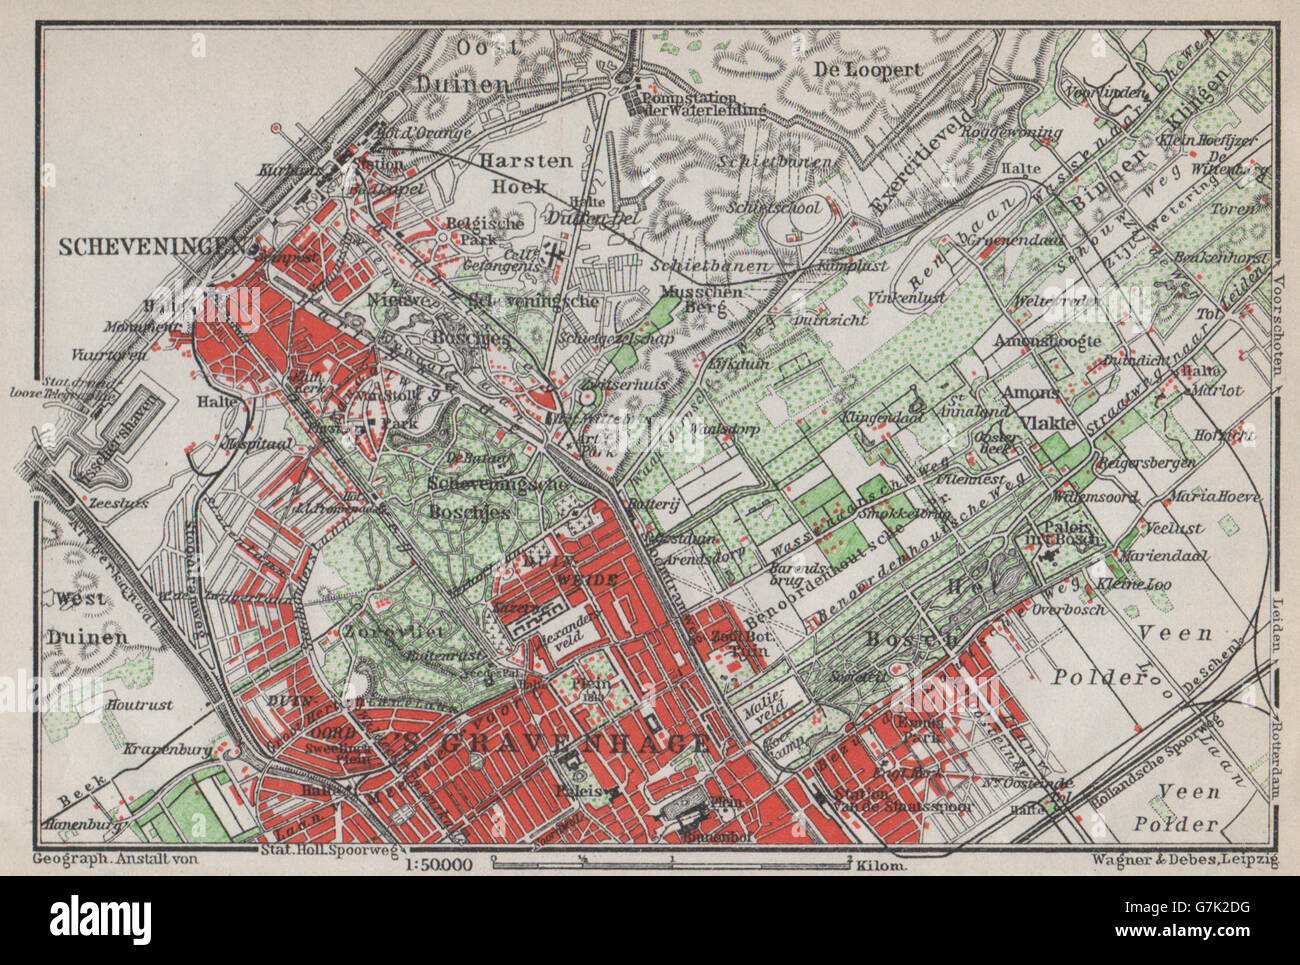 SCHEVENINGEN Y LA HAYA DEN HAAG 's-Gravenhage alrededores. Países Bajos, 1910 mapa Foto de stock